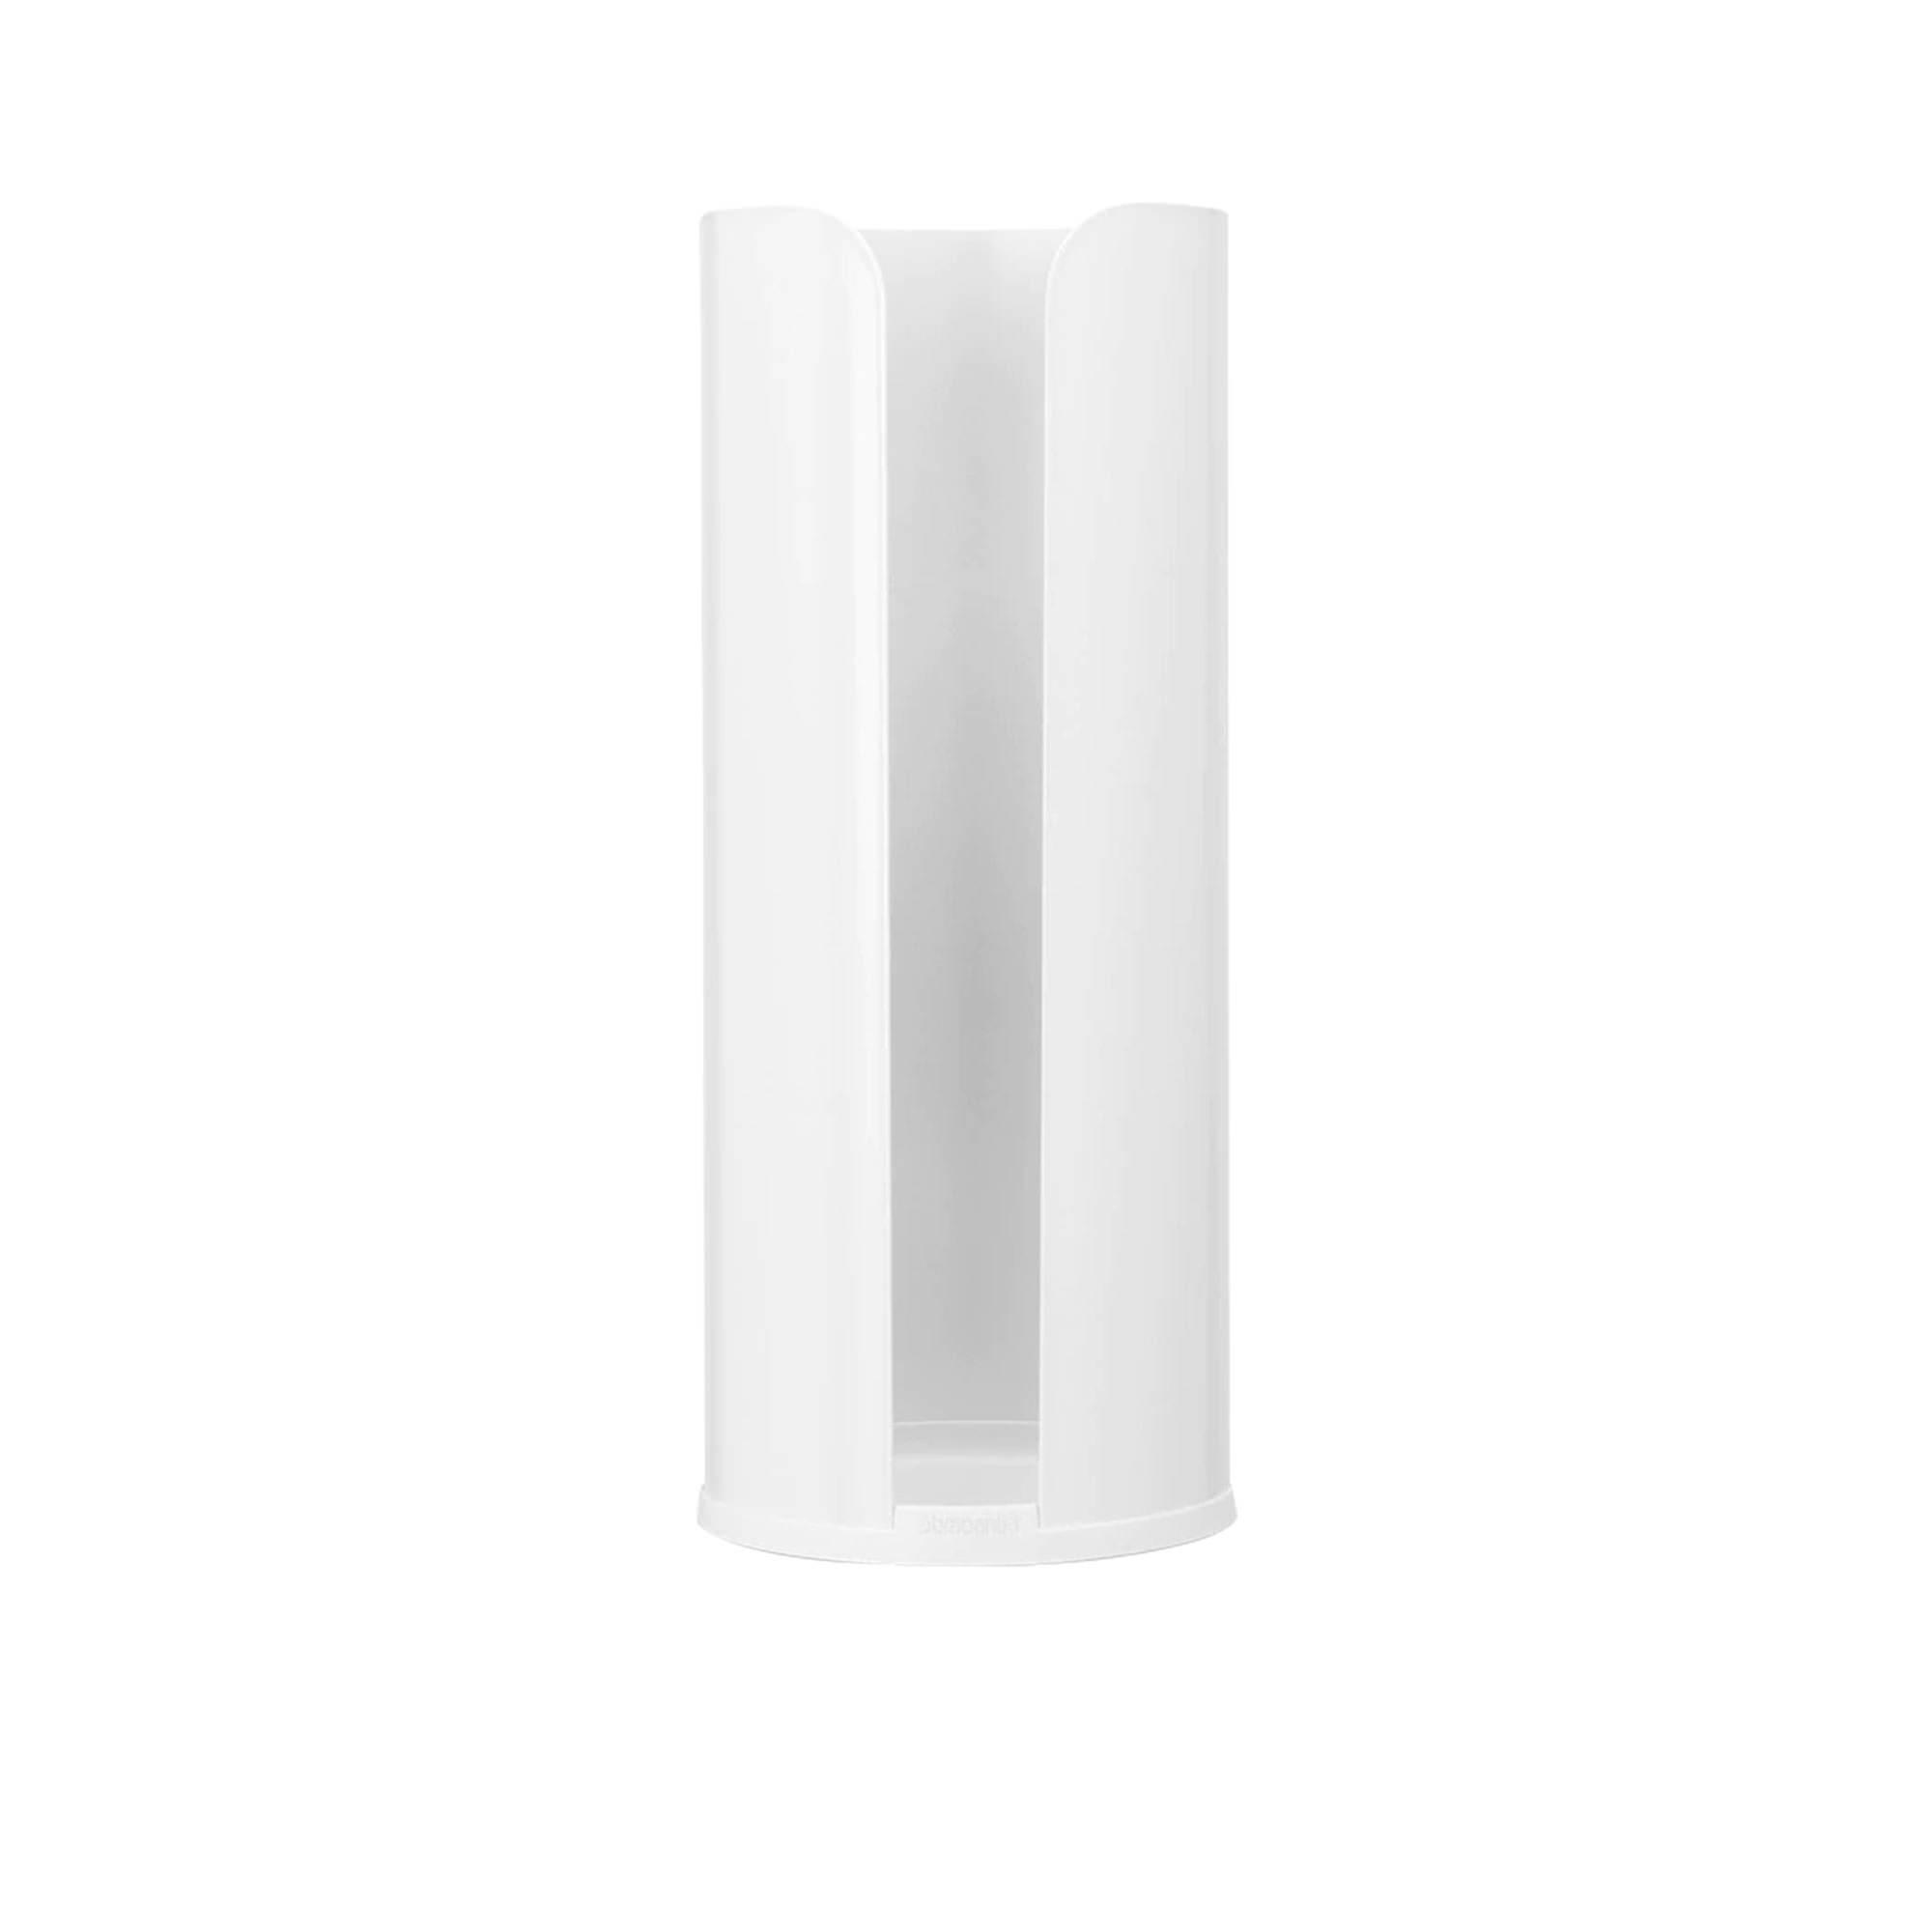 Brabantia Toilet Paper Roll Holder White Image 1